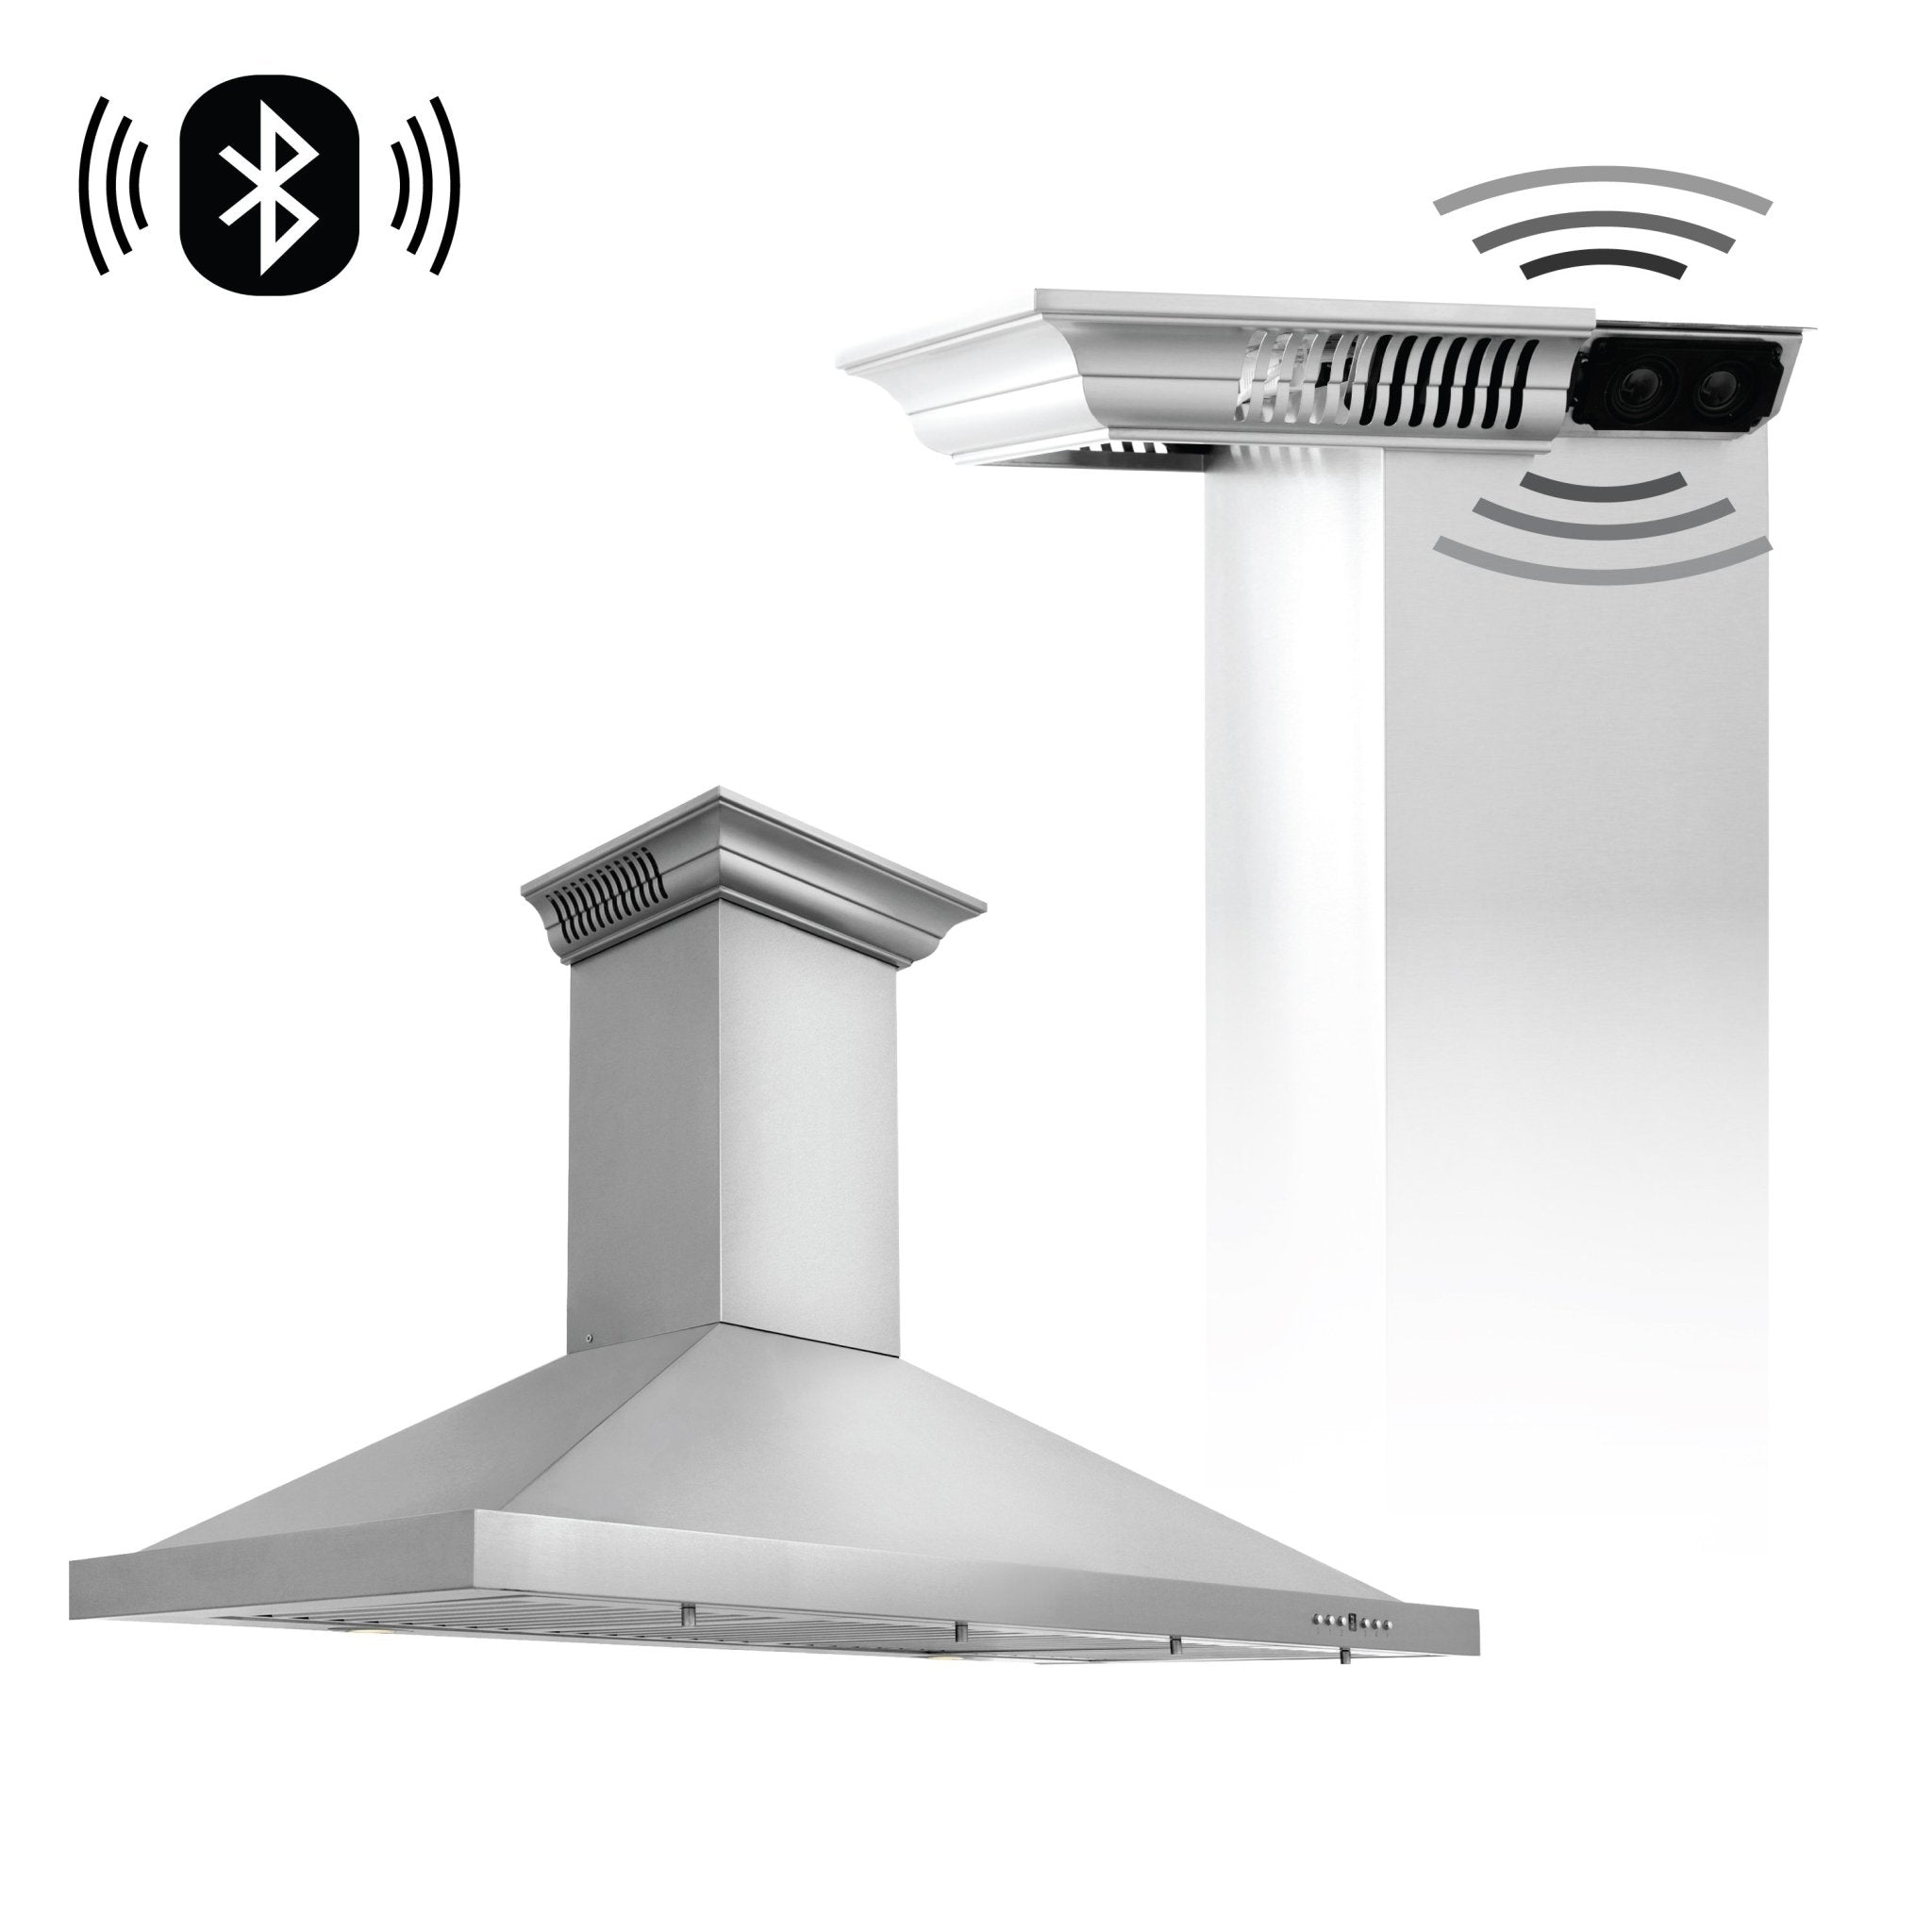 ZLINE Kitchen and Bath, ZLINE Wall Mount Range Hood in Stainless Steel with Built-in CrownSound® Bluetooth Speakers (KBCRN-BT), KBCRN-BT-42,